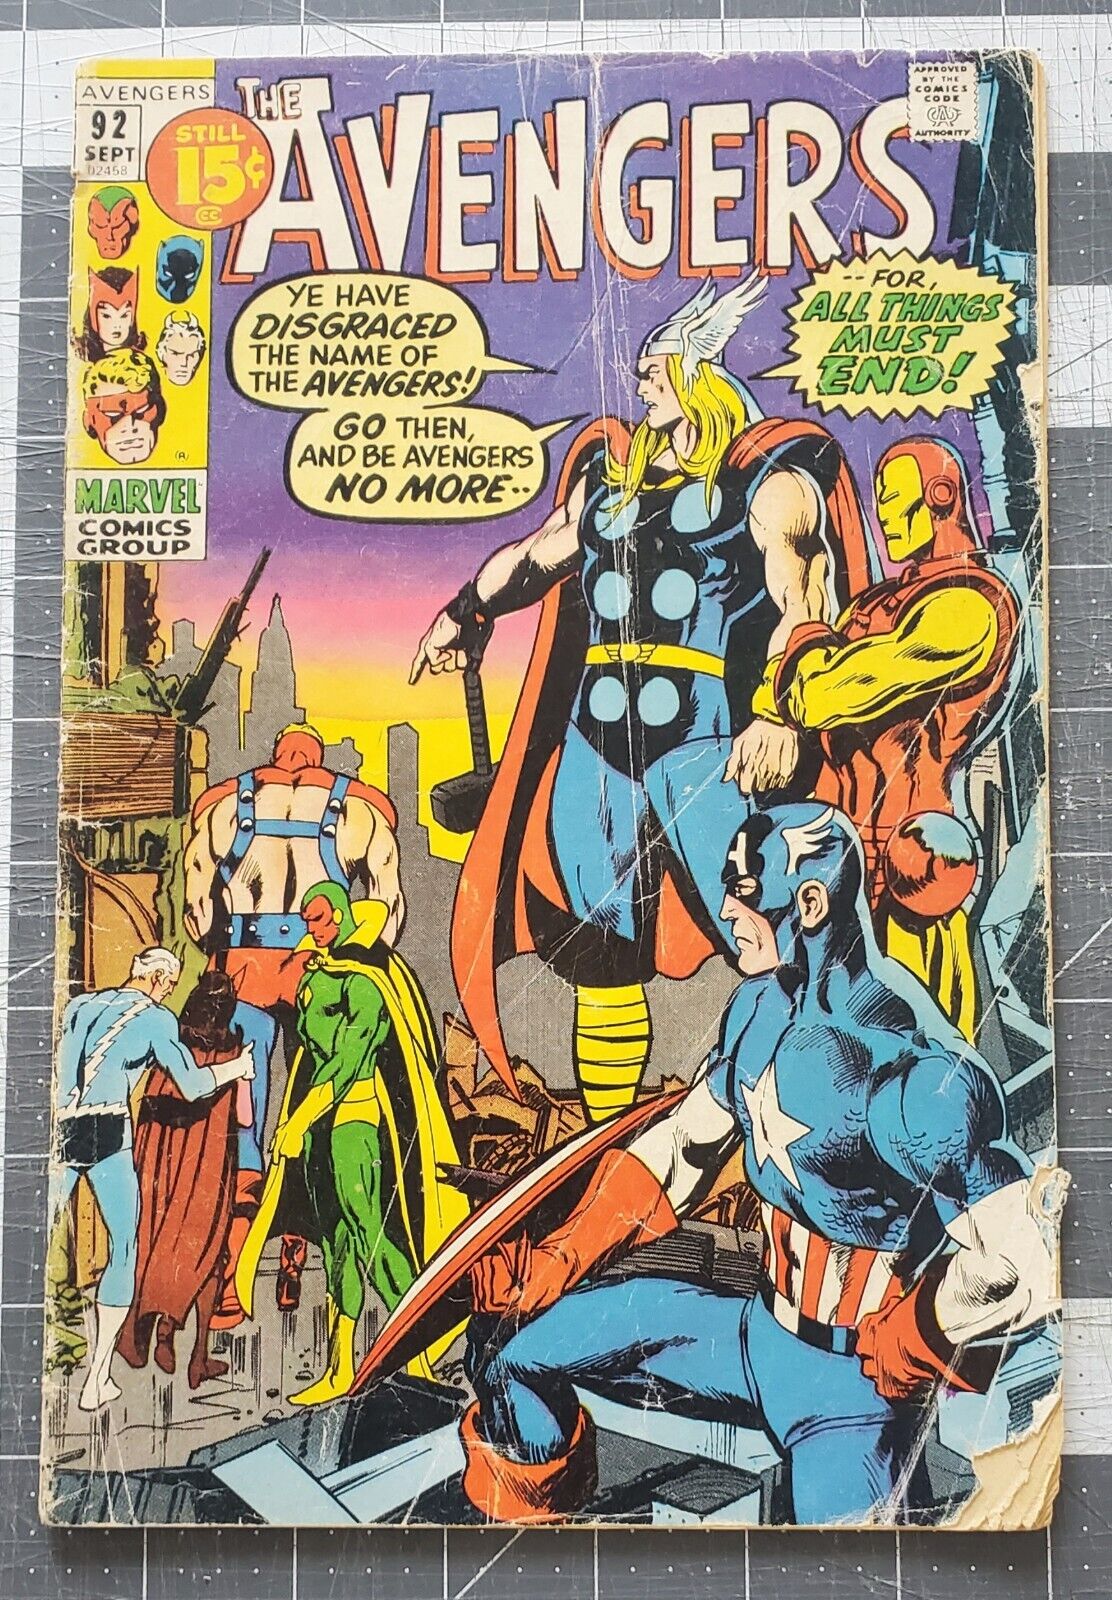 Avengers #92 (Marvel, 1971) Neal Adans Cover Kree-Skrull War Pt 4 Low Grade